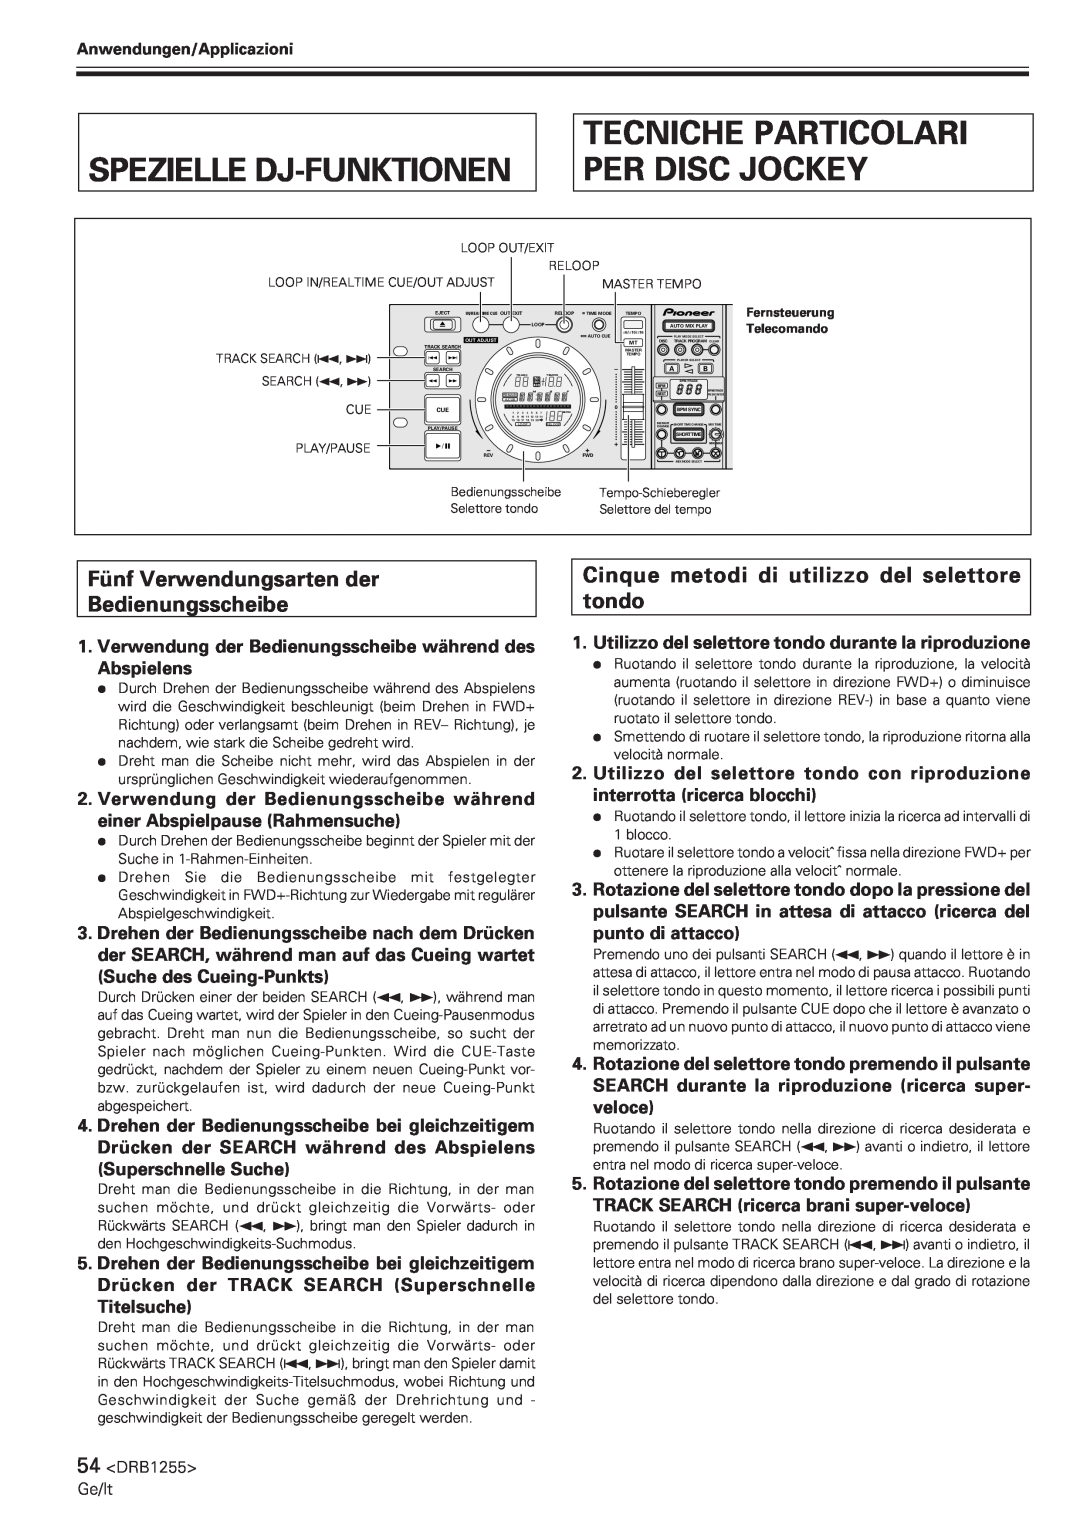 Pioneer CMX-5000 manual Spezielle Dj-Funktionen, Tecniche Particolari Per Disc Jockey 